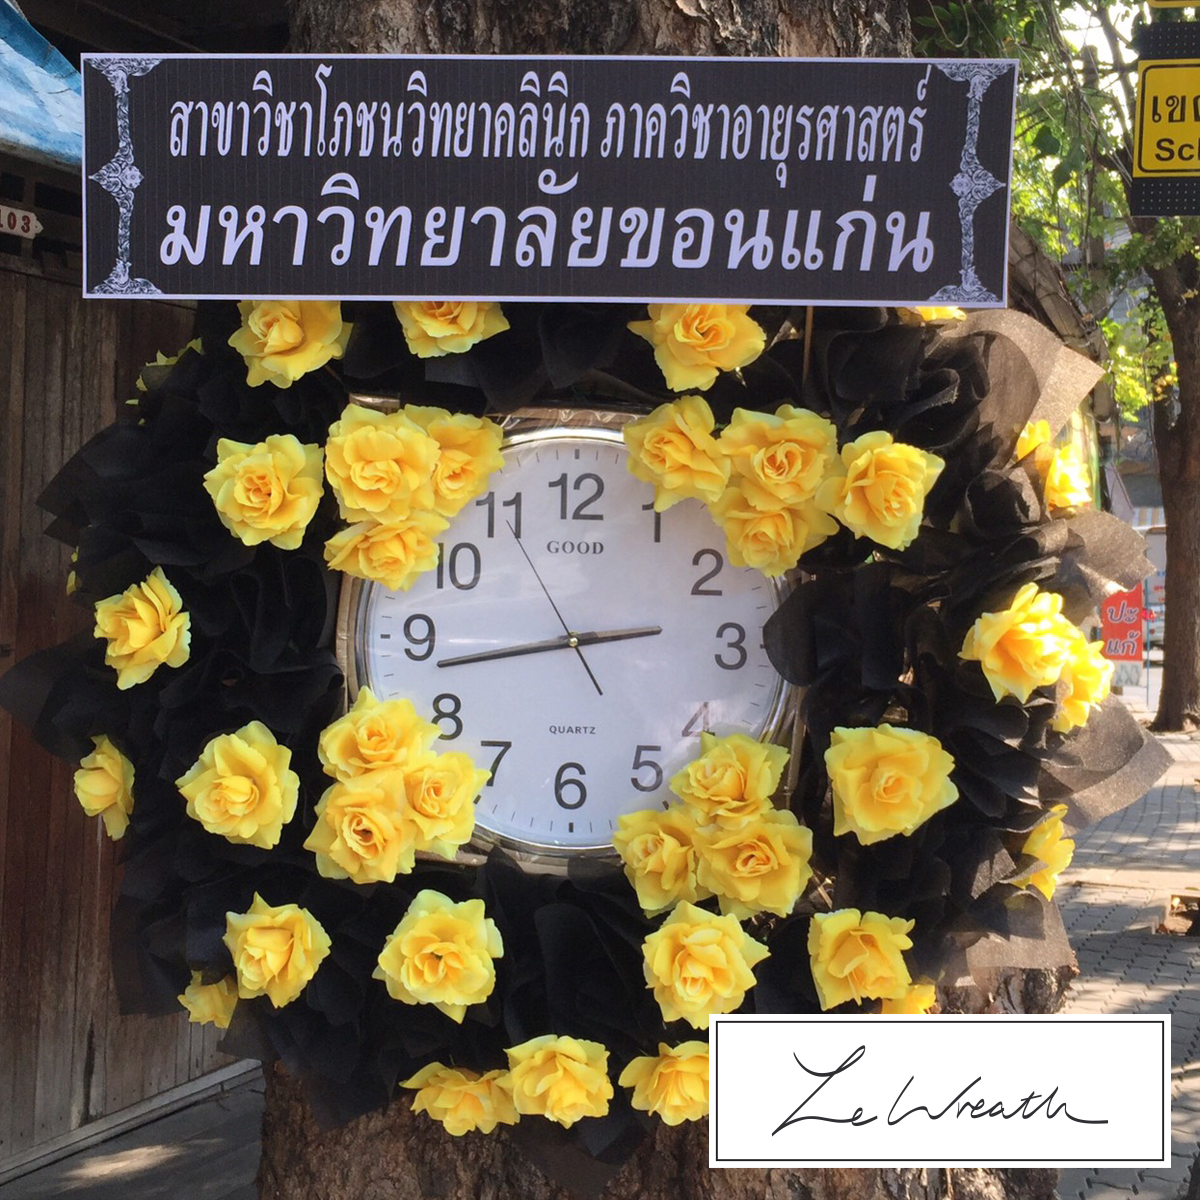 พวงหรีดนาฬิกา ตกแต่งด้วยดอกไม้ประดิษฐ์โทนสีดำ แซมด้วยสีเหลือง ให้ความรู้สึกสุภาพ ผ่อนคลาย